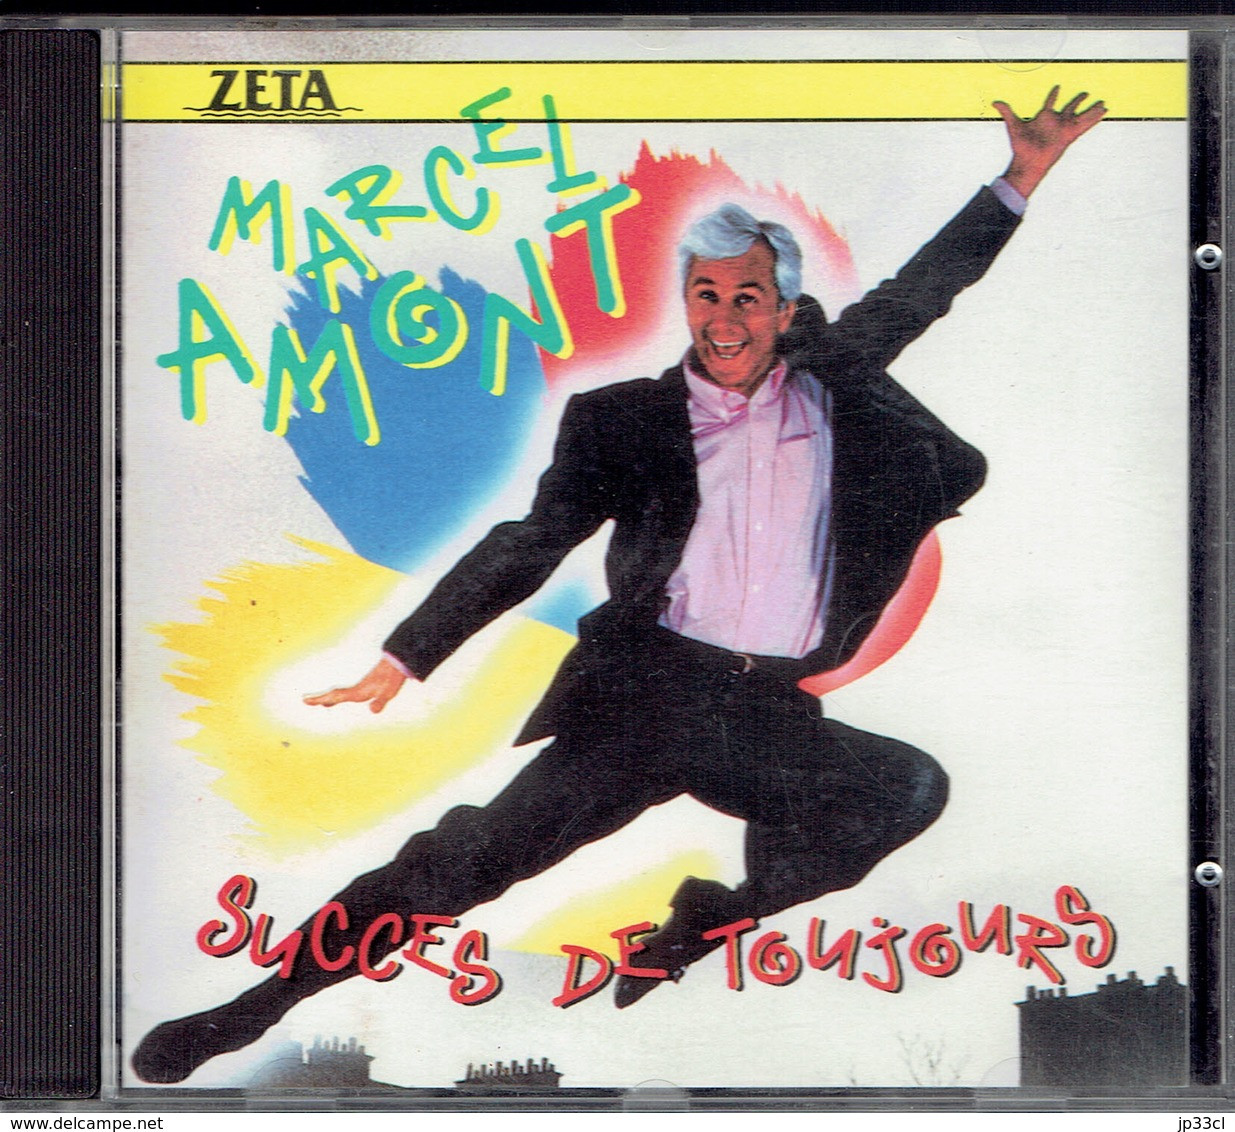 Succès De Toujours Par Marcel Amont (Zeta, 1989) - Compilations